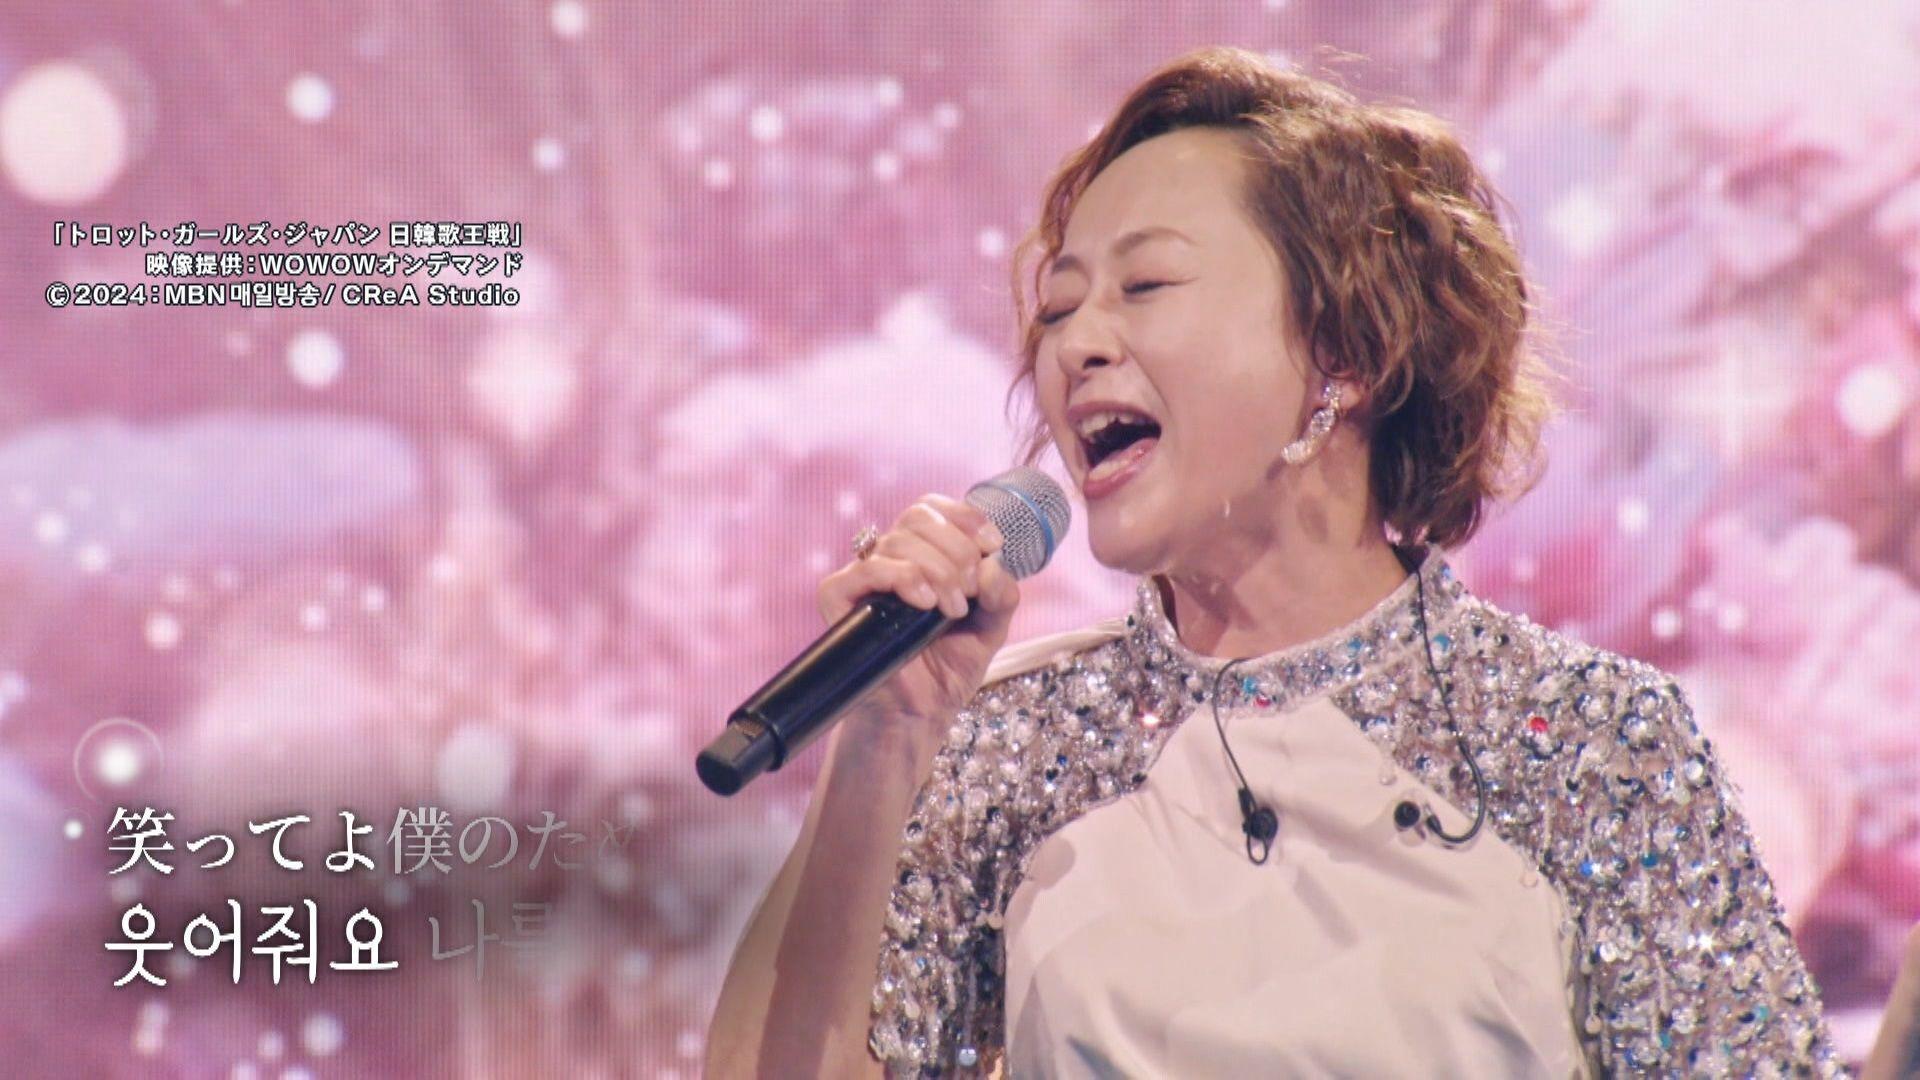 「言語を越えて感動を与える」日本人歌手・歌心りえさん(50)が韓国で大ブレイク　歌唱動画は370万再生突破